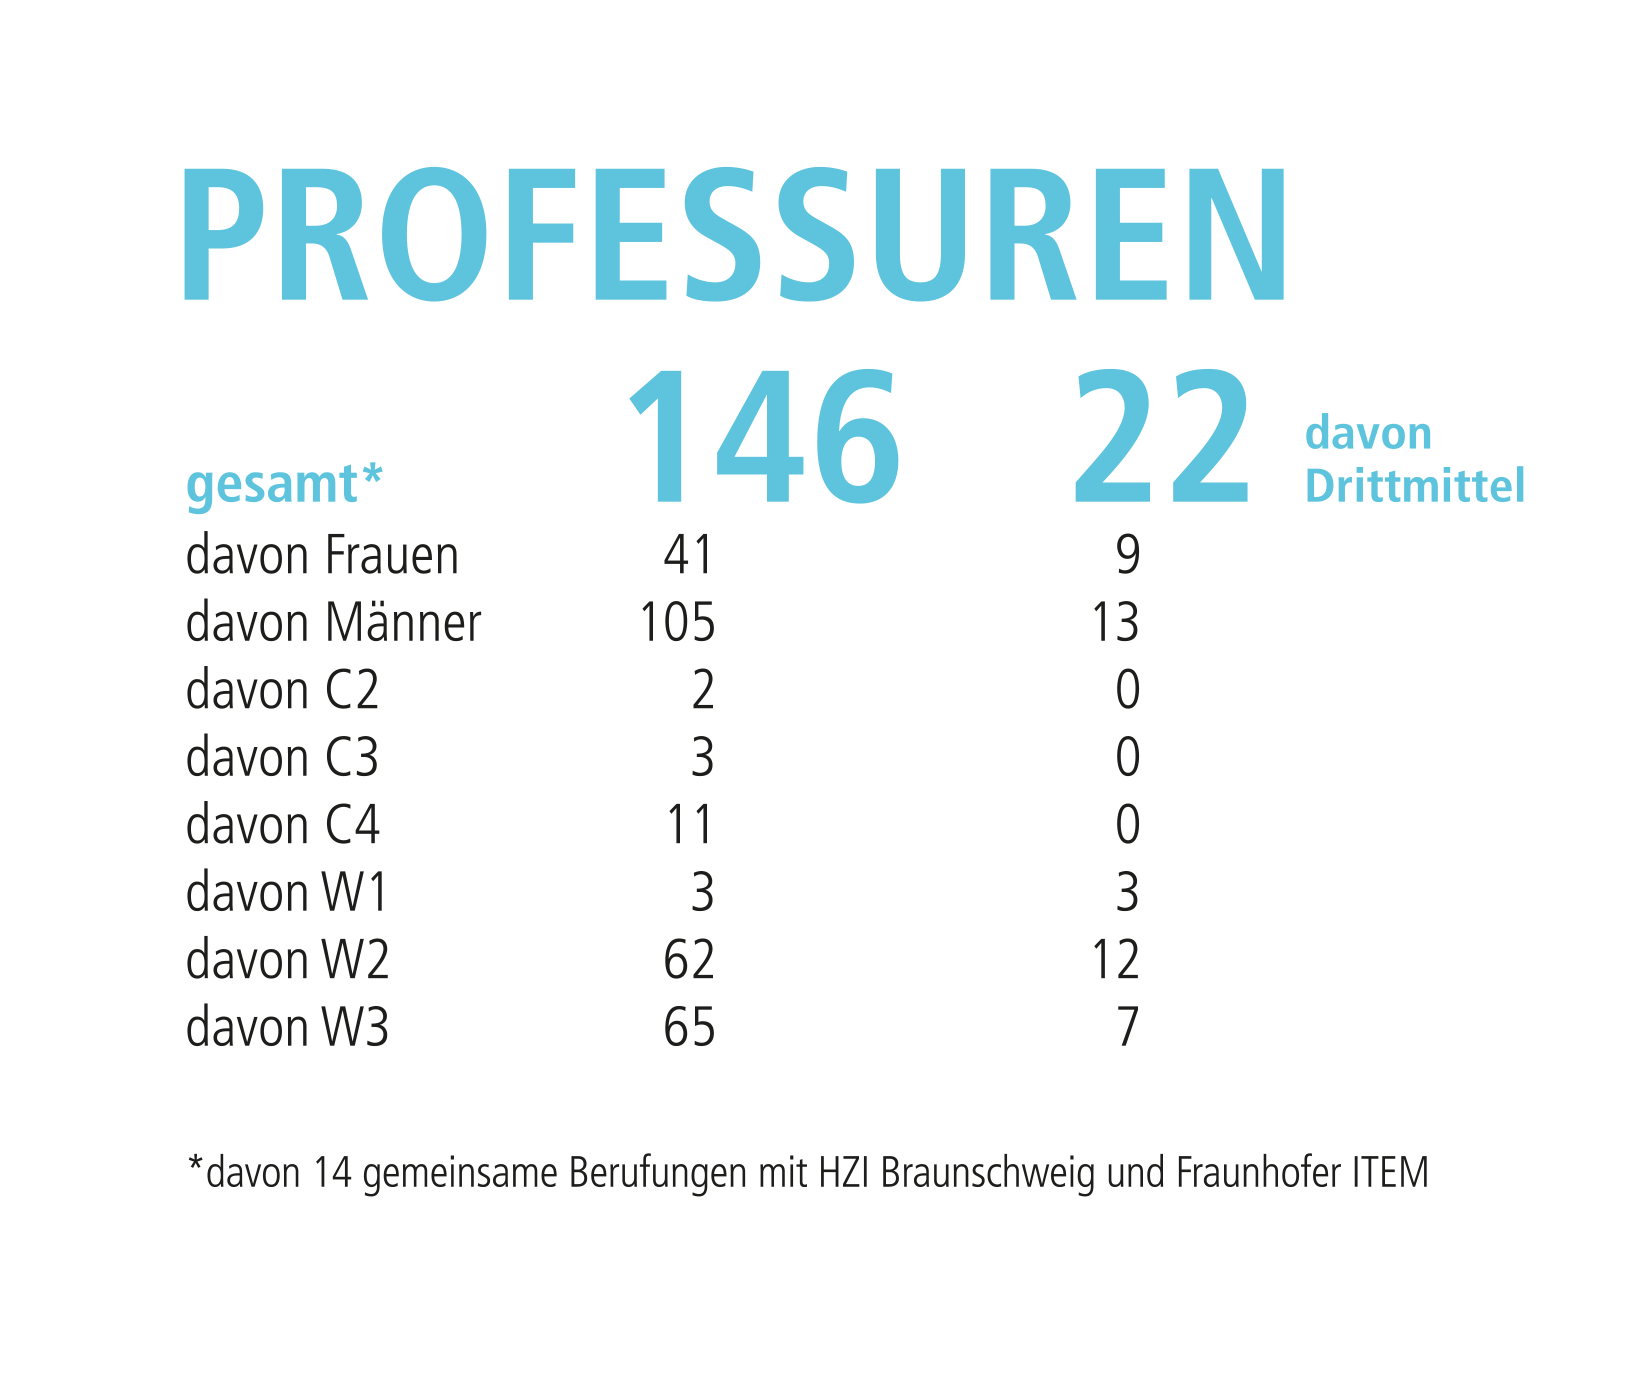 Grafik zeigt in Tabellenform die Anzahl der Professuren.